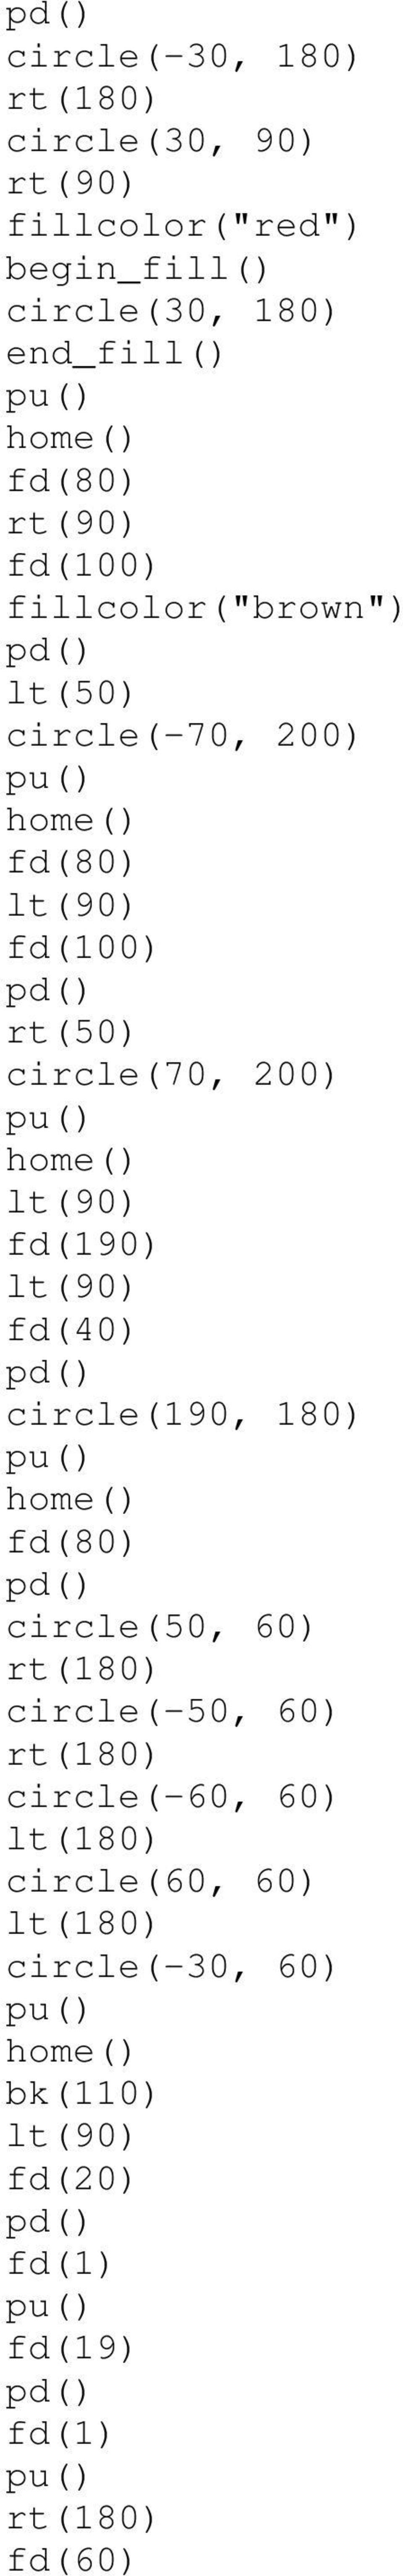 circle(70, 200) fd(190) fd(40) circle(190, 180) fd(80) circle(50, 60)